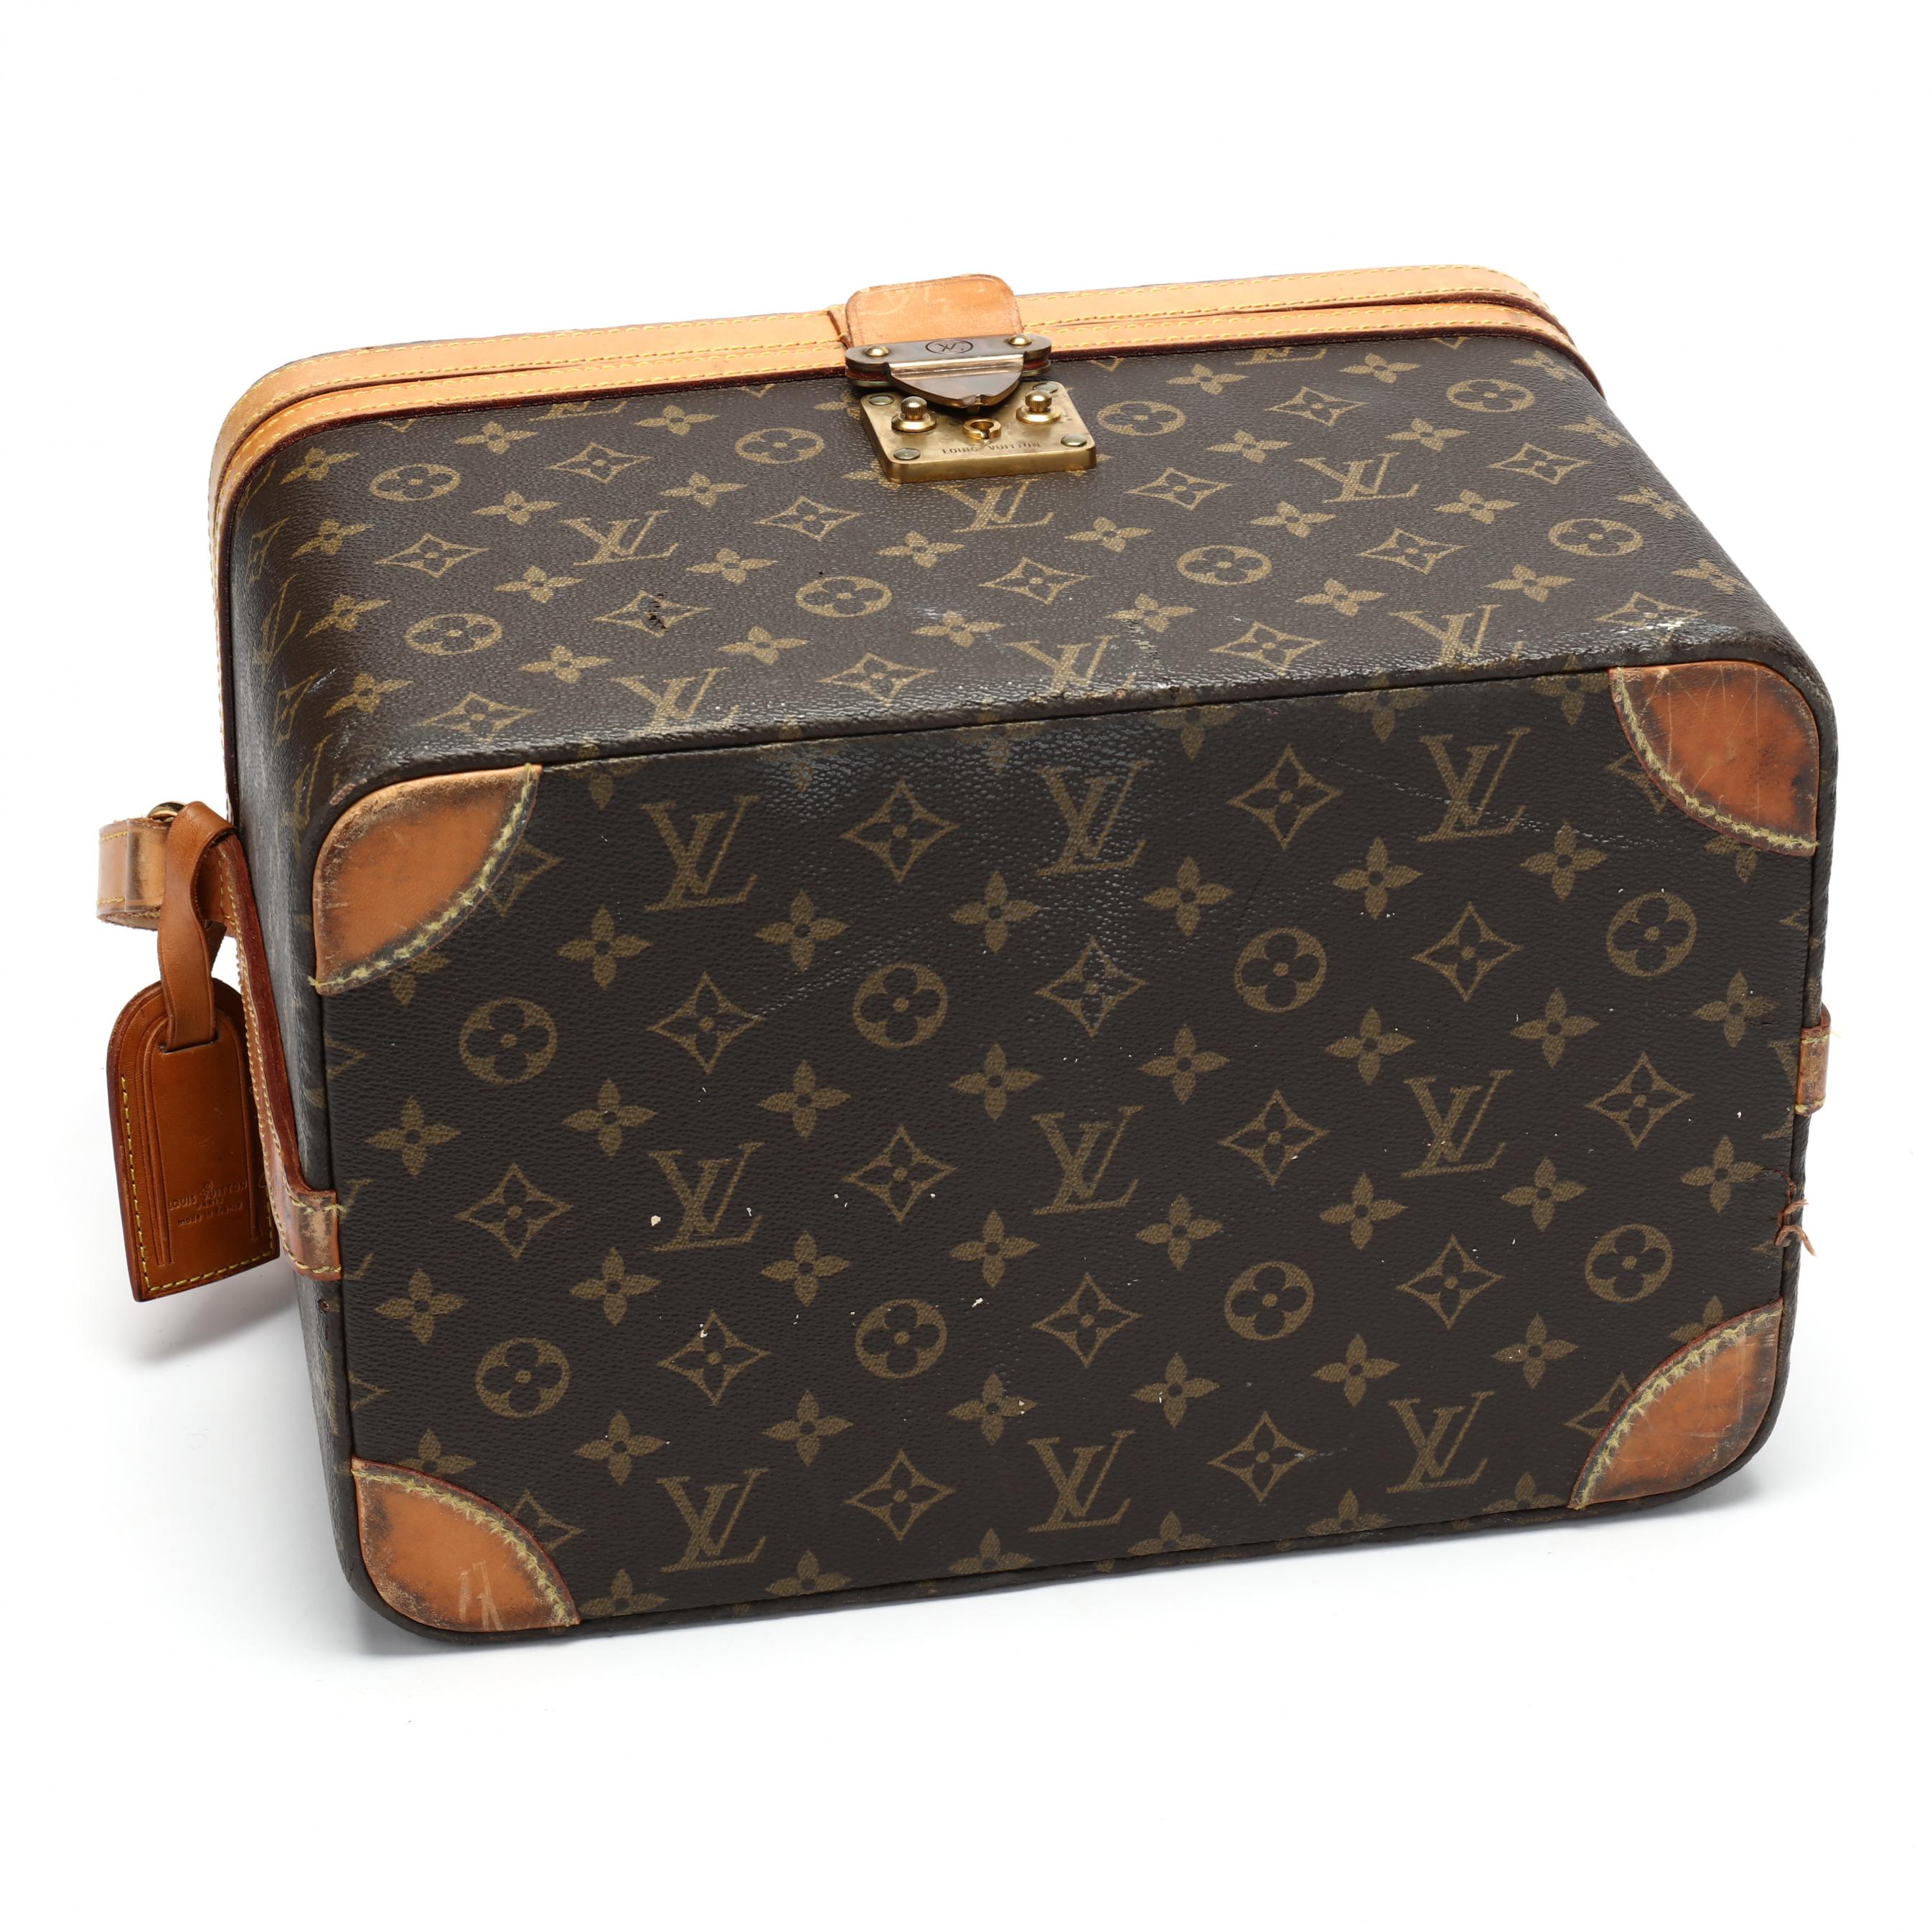 Rare Louis Vuitton Monogram Train Case Travel Bag Beauty 